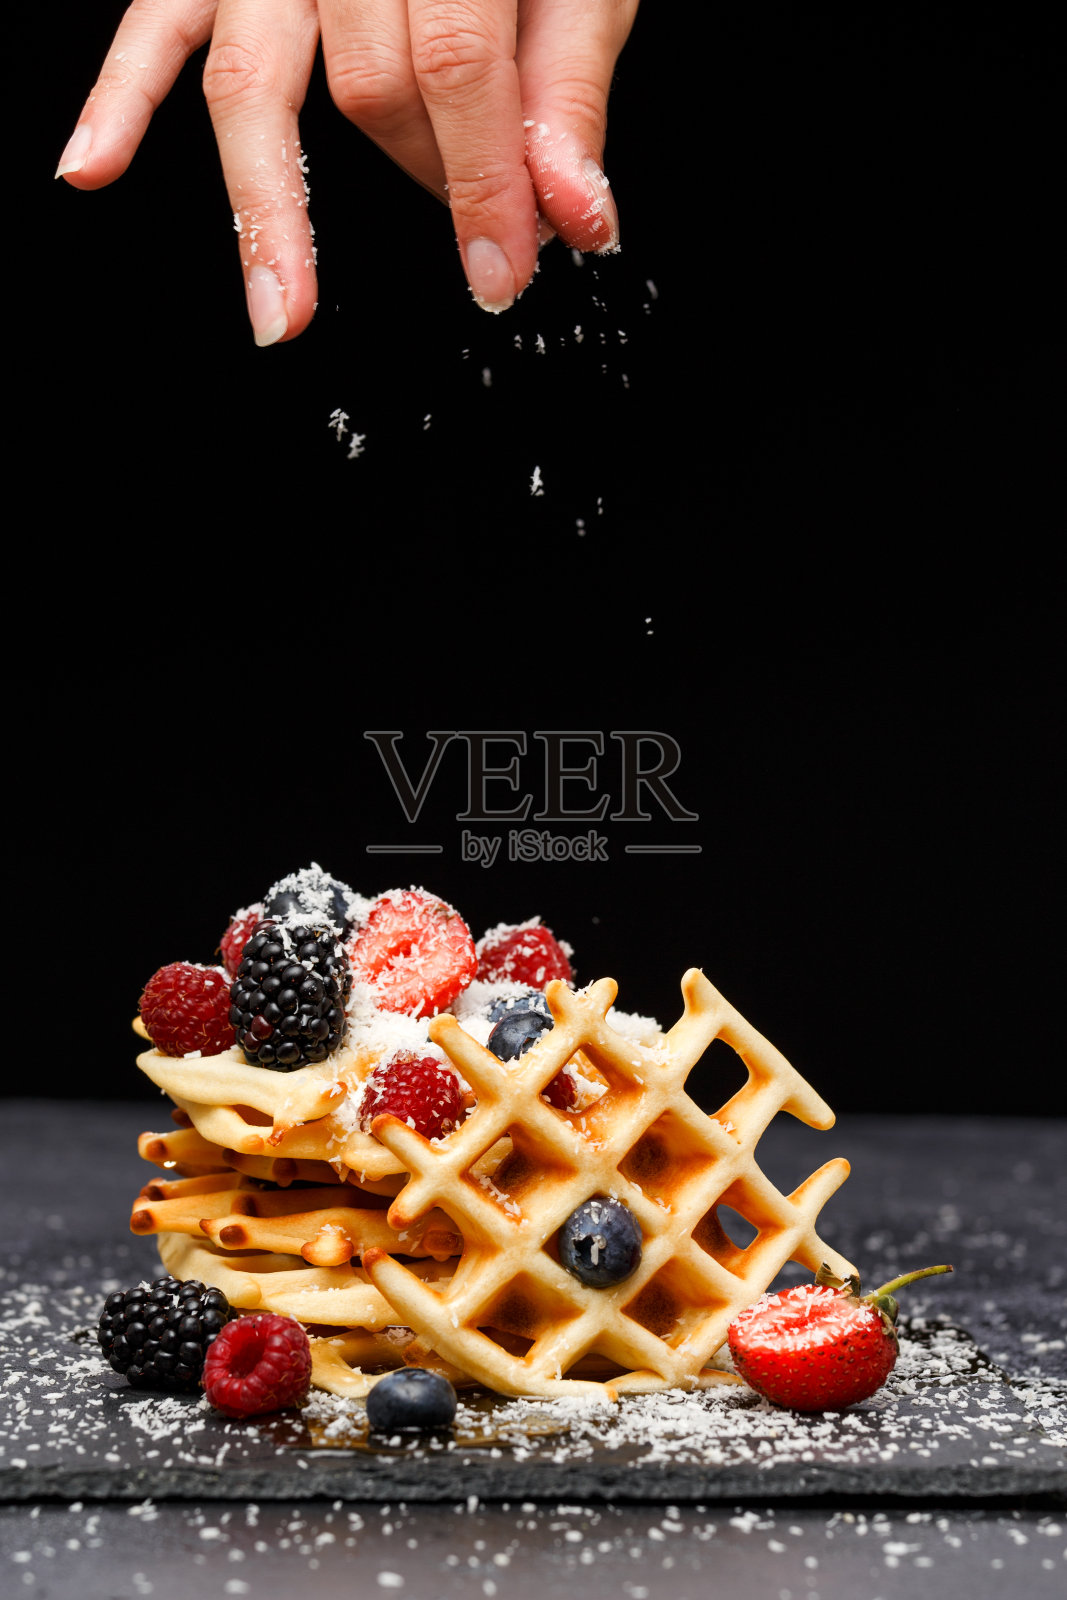 在空白的背景下，在黑板上用覆盆子、草莓和糖粉点缀的维也纳薄饼照片摄影图片